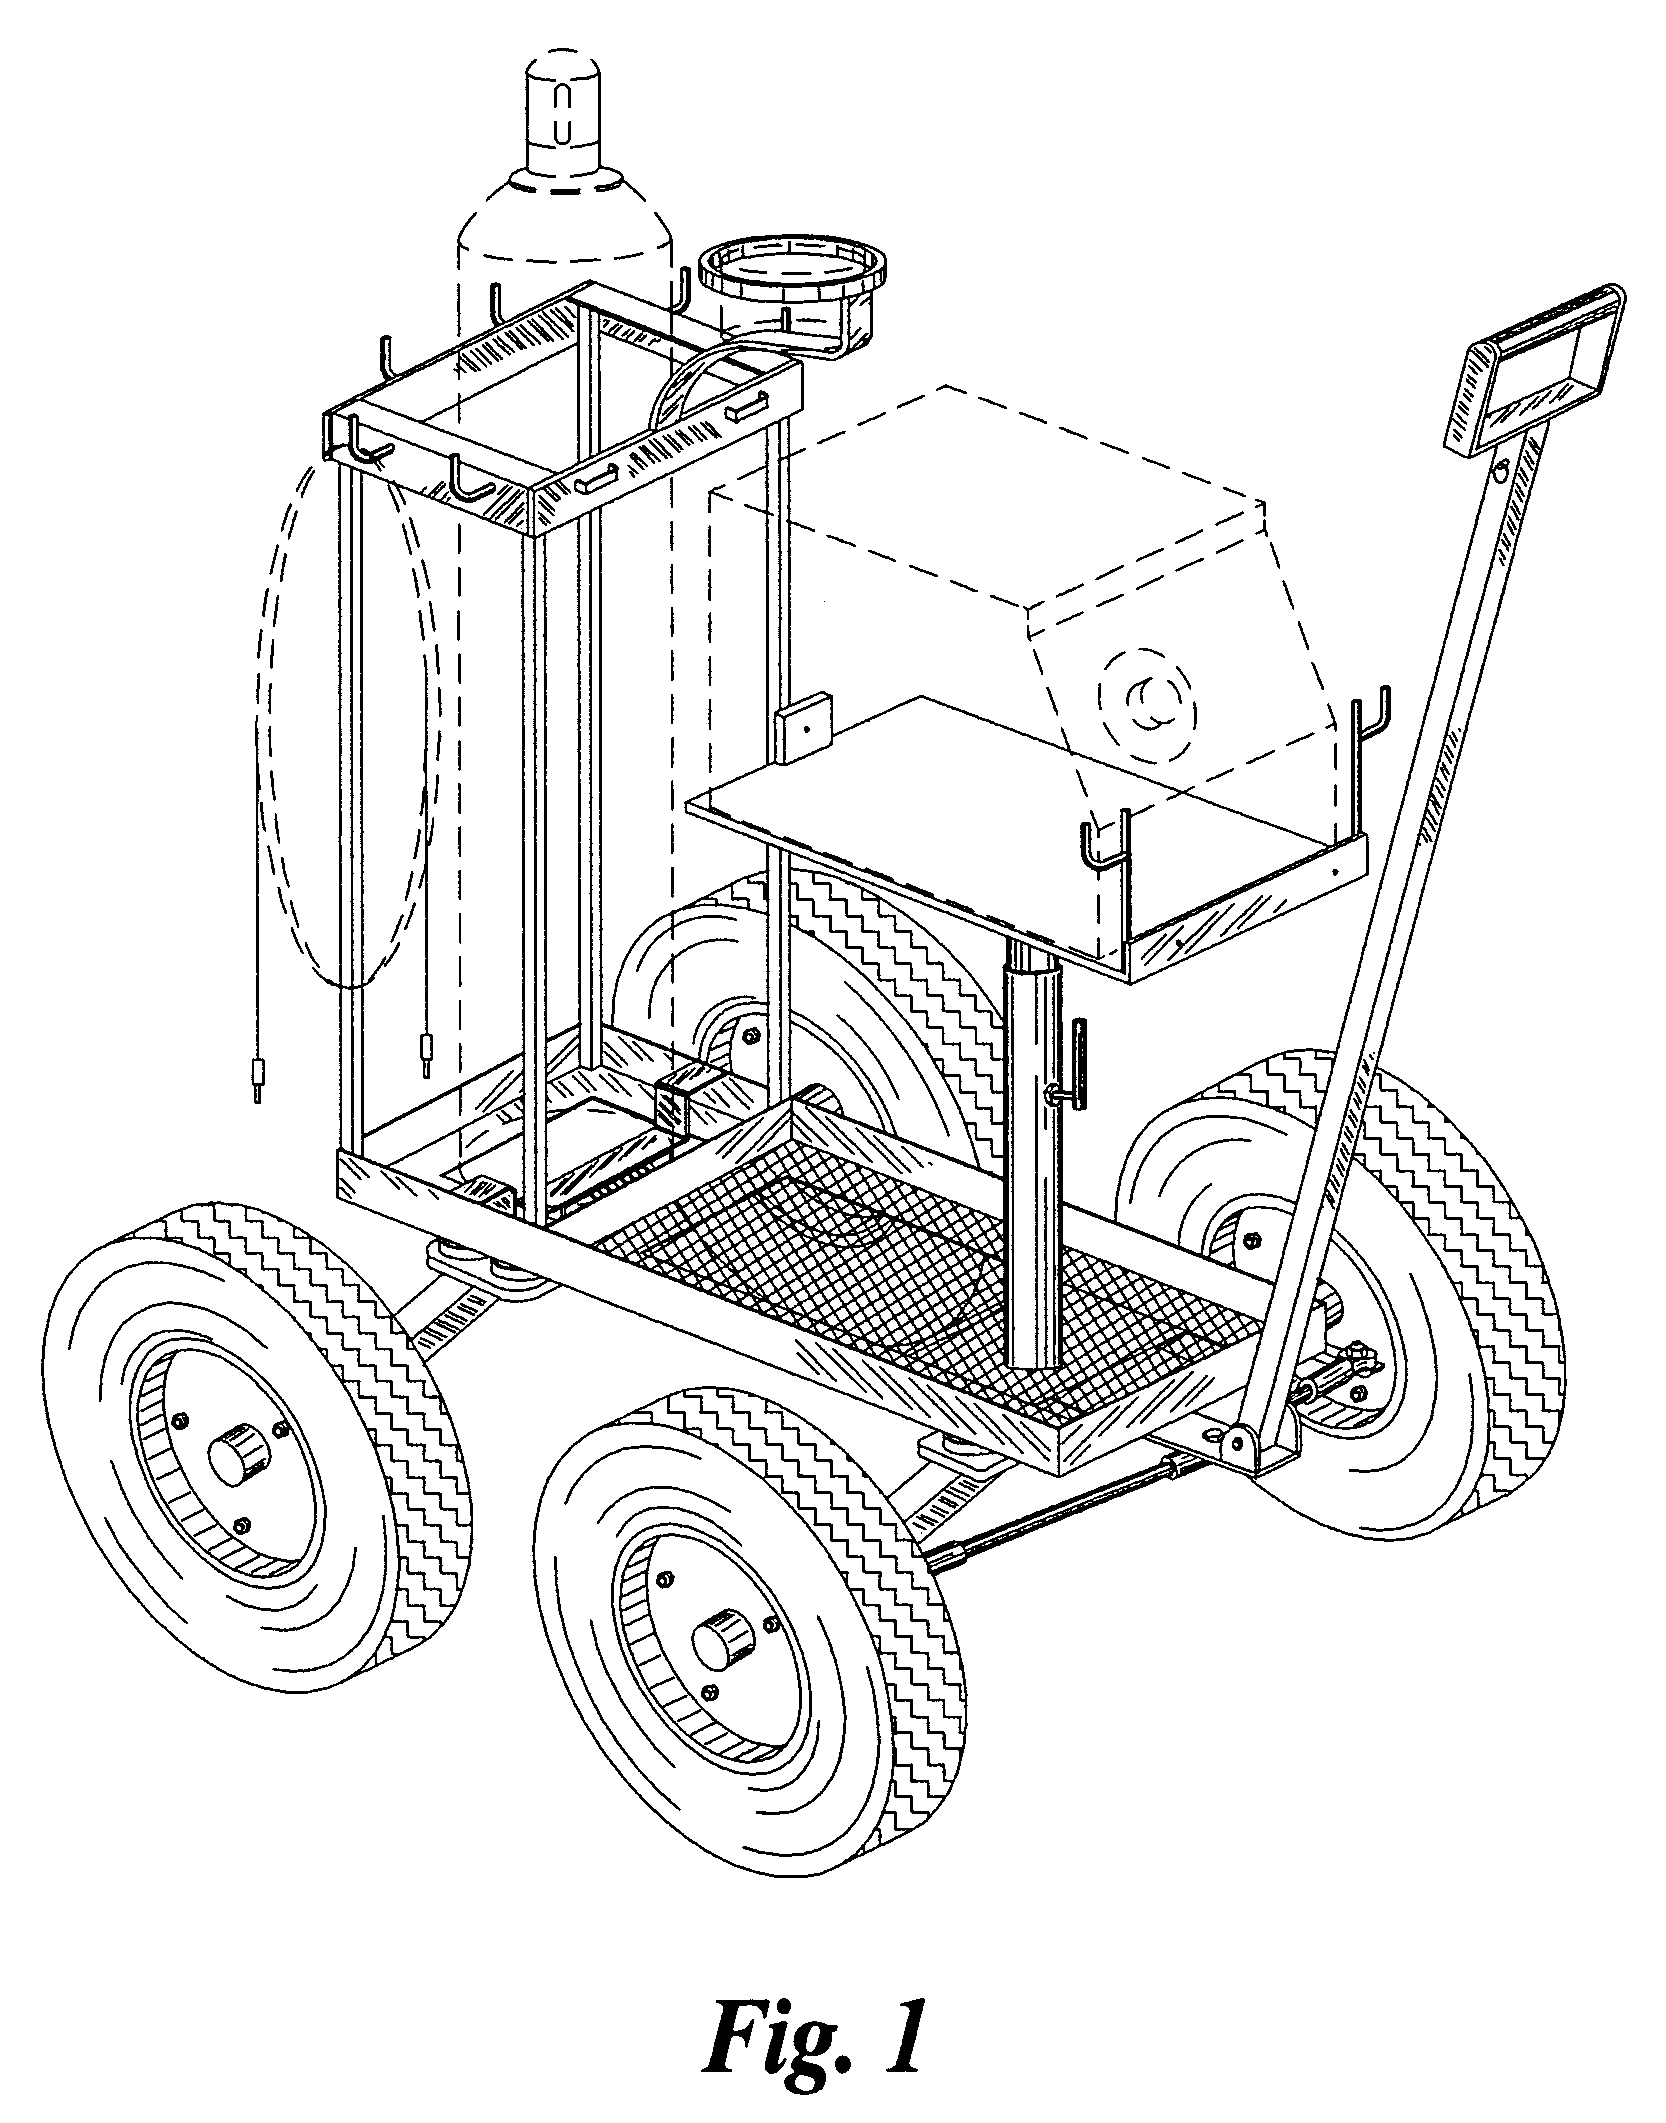 All-terrain welding cart